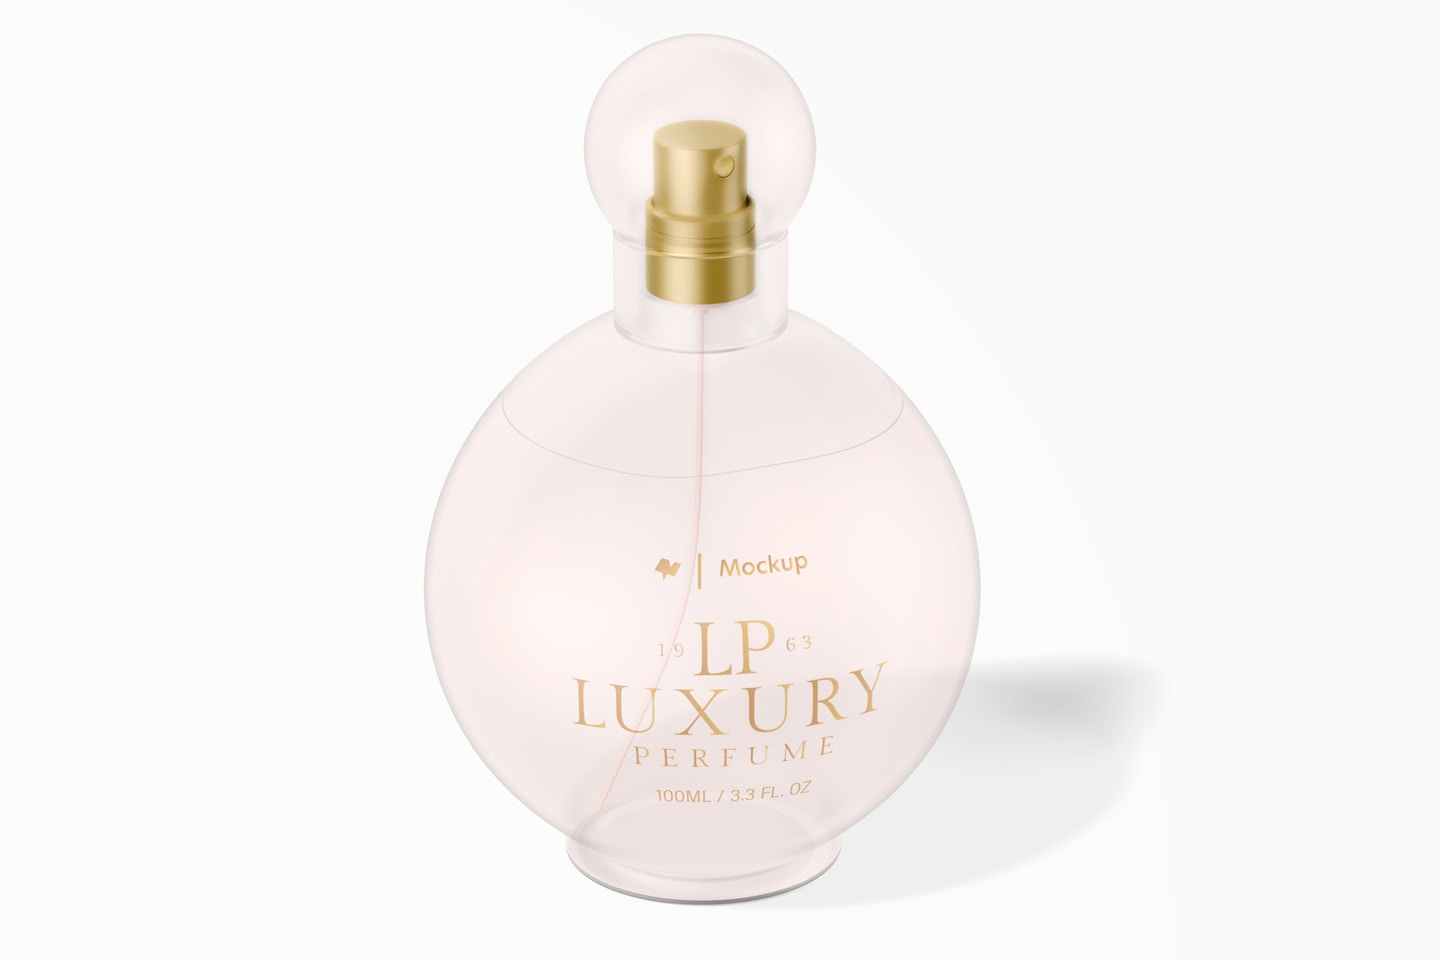 Stubby Luxury Perfume Bottle Mockup